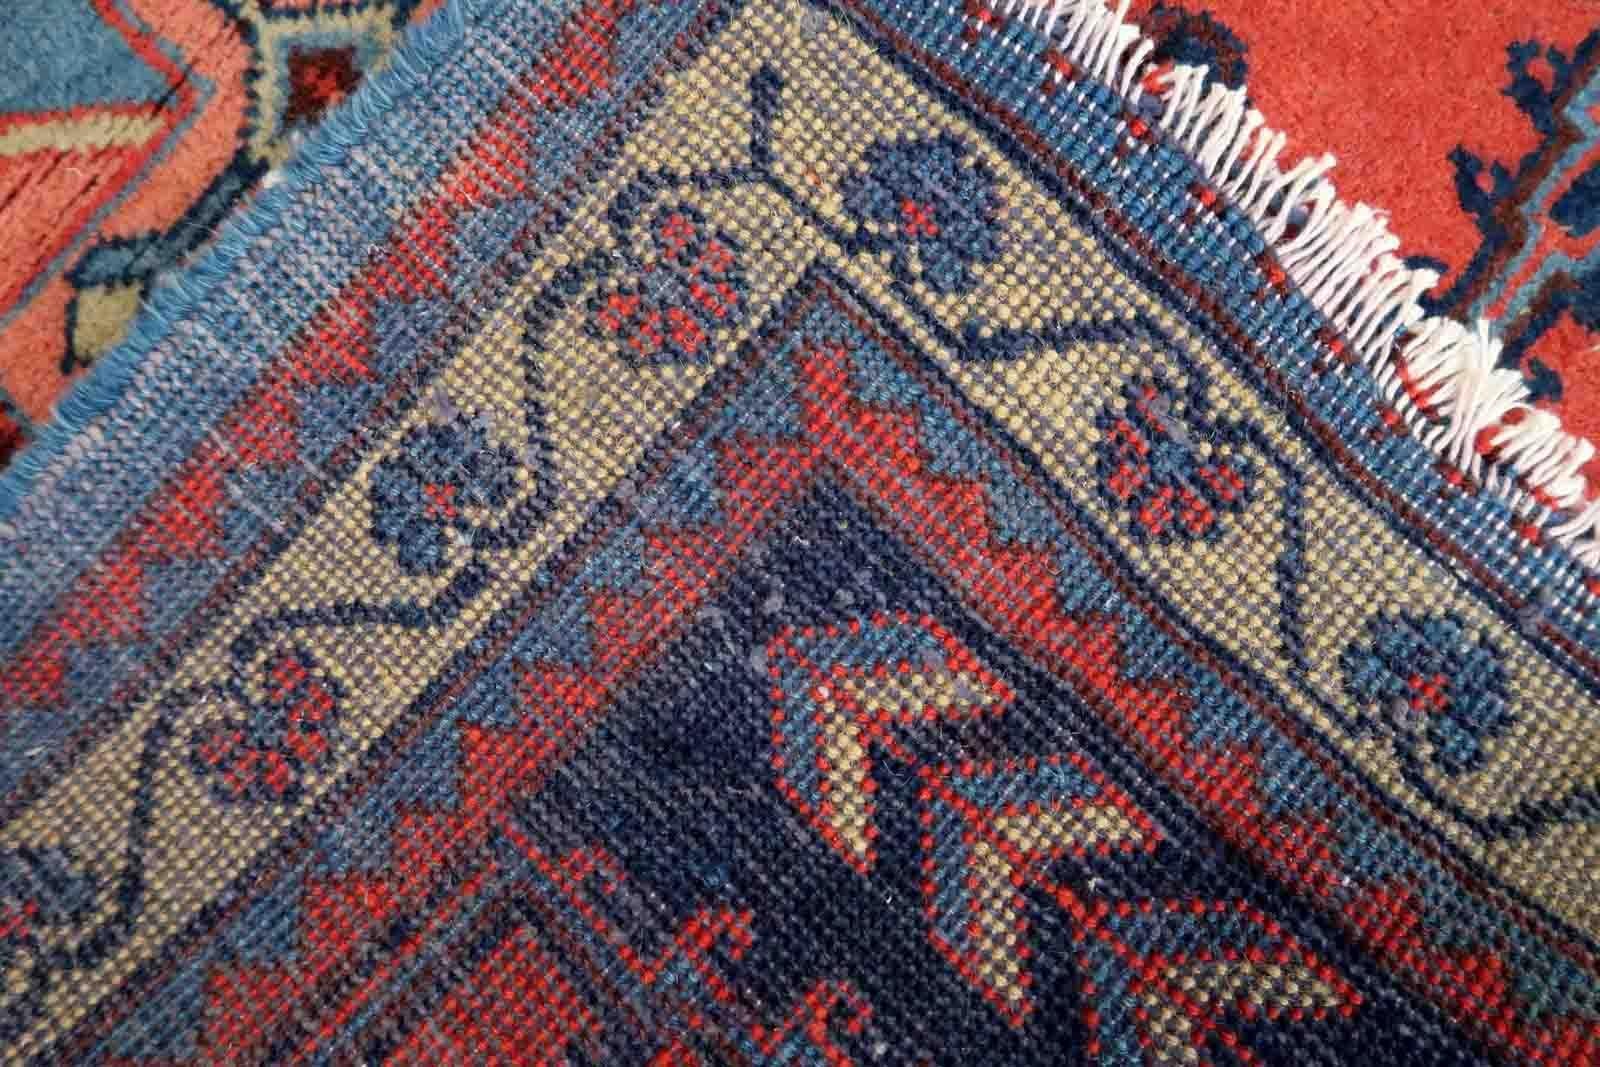 Handgefertigter Vintage-Teppich in leuchtendem Rot aus der Region Hamadan. Der Teppich stammt aus dem Ende des 20. Jahrhunderts und ist in gutem Originalzustand.

-Zustand: original gut,

-Umgebung: 1970er Jahre,

-Größe: 3,5' x 4,8' (109cm x